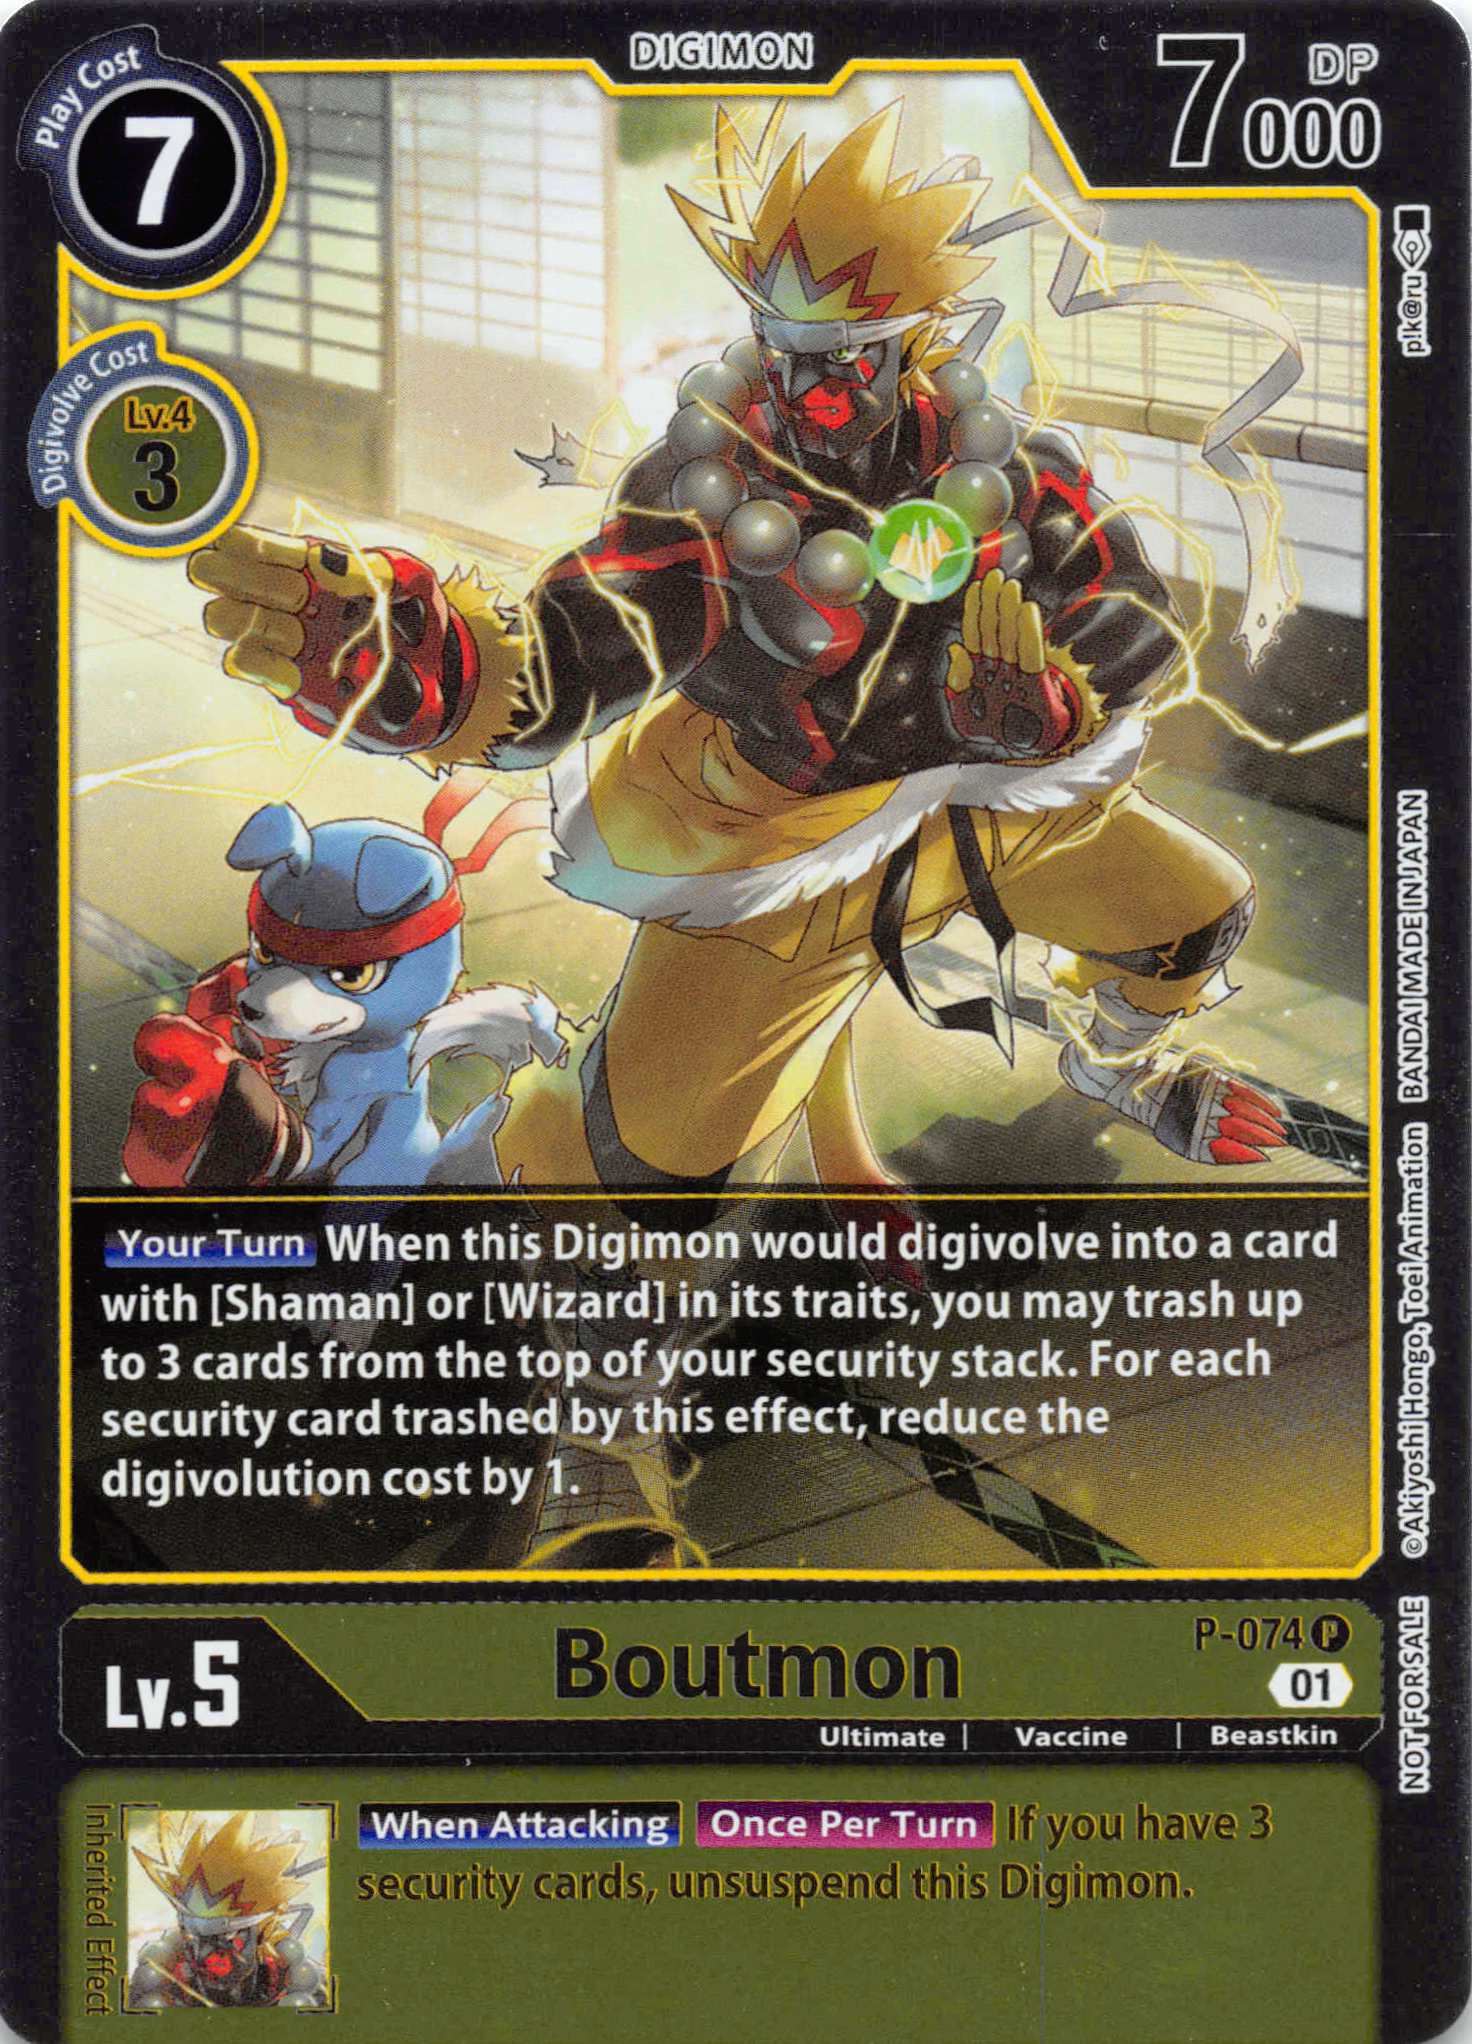 Boutmon [P-074] [Digimon Promotion Cards] Foil